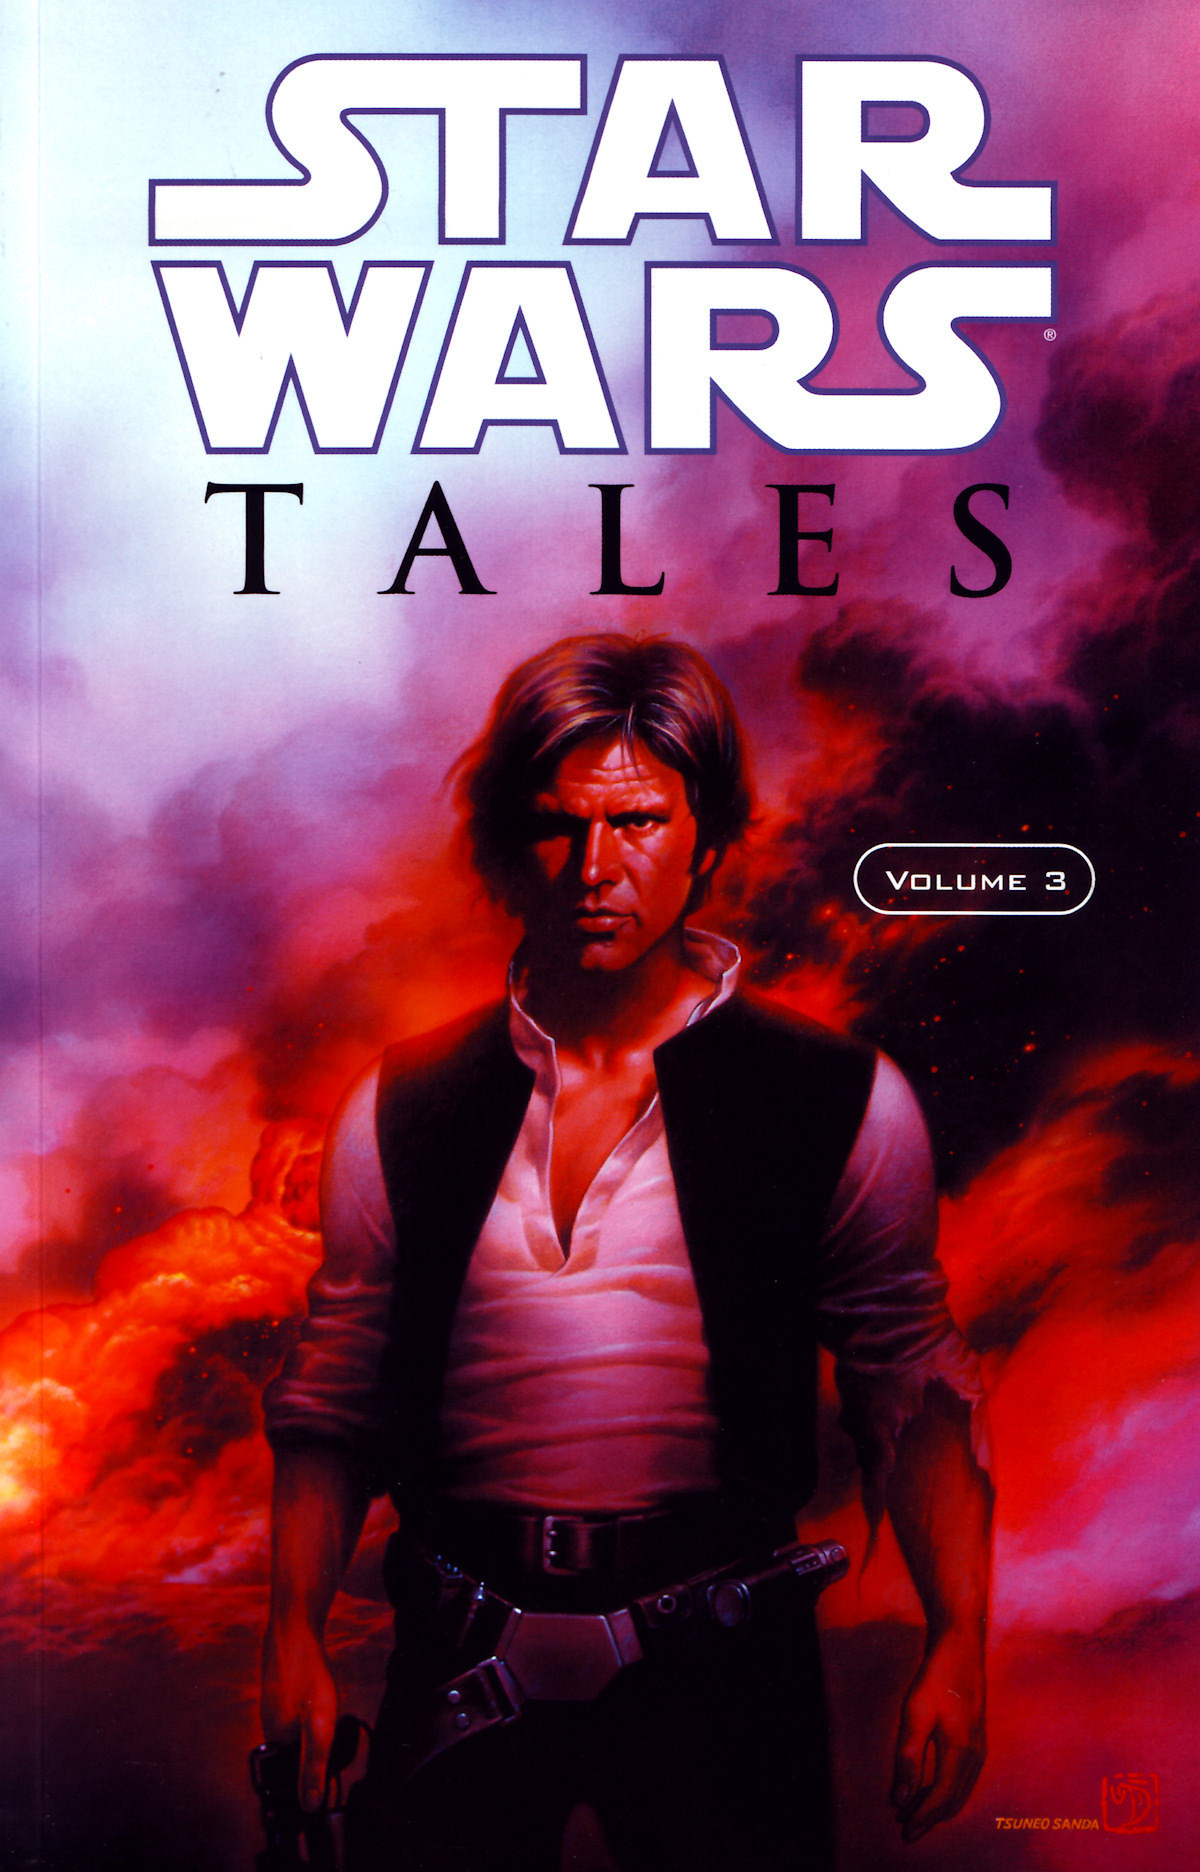 Star Wars Tales Volume 3 Various